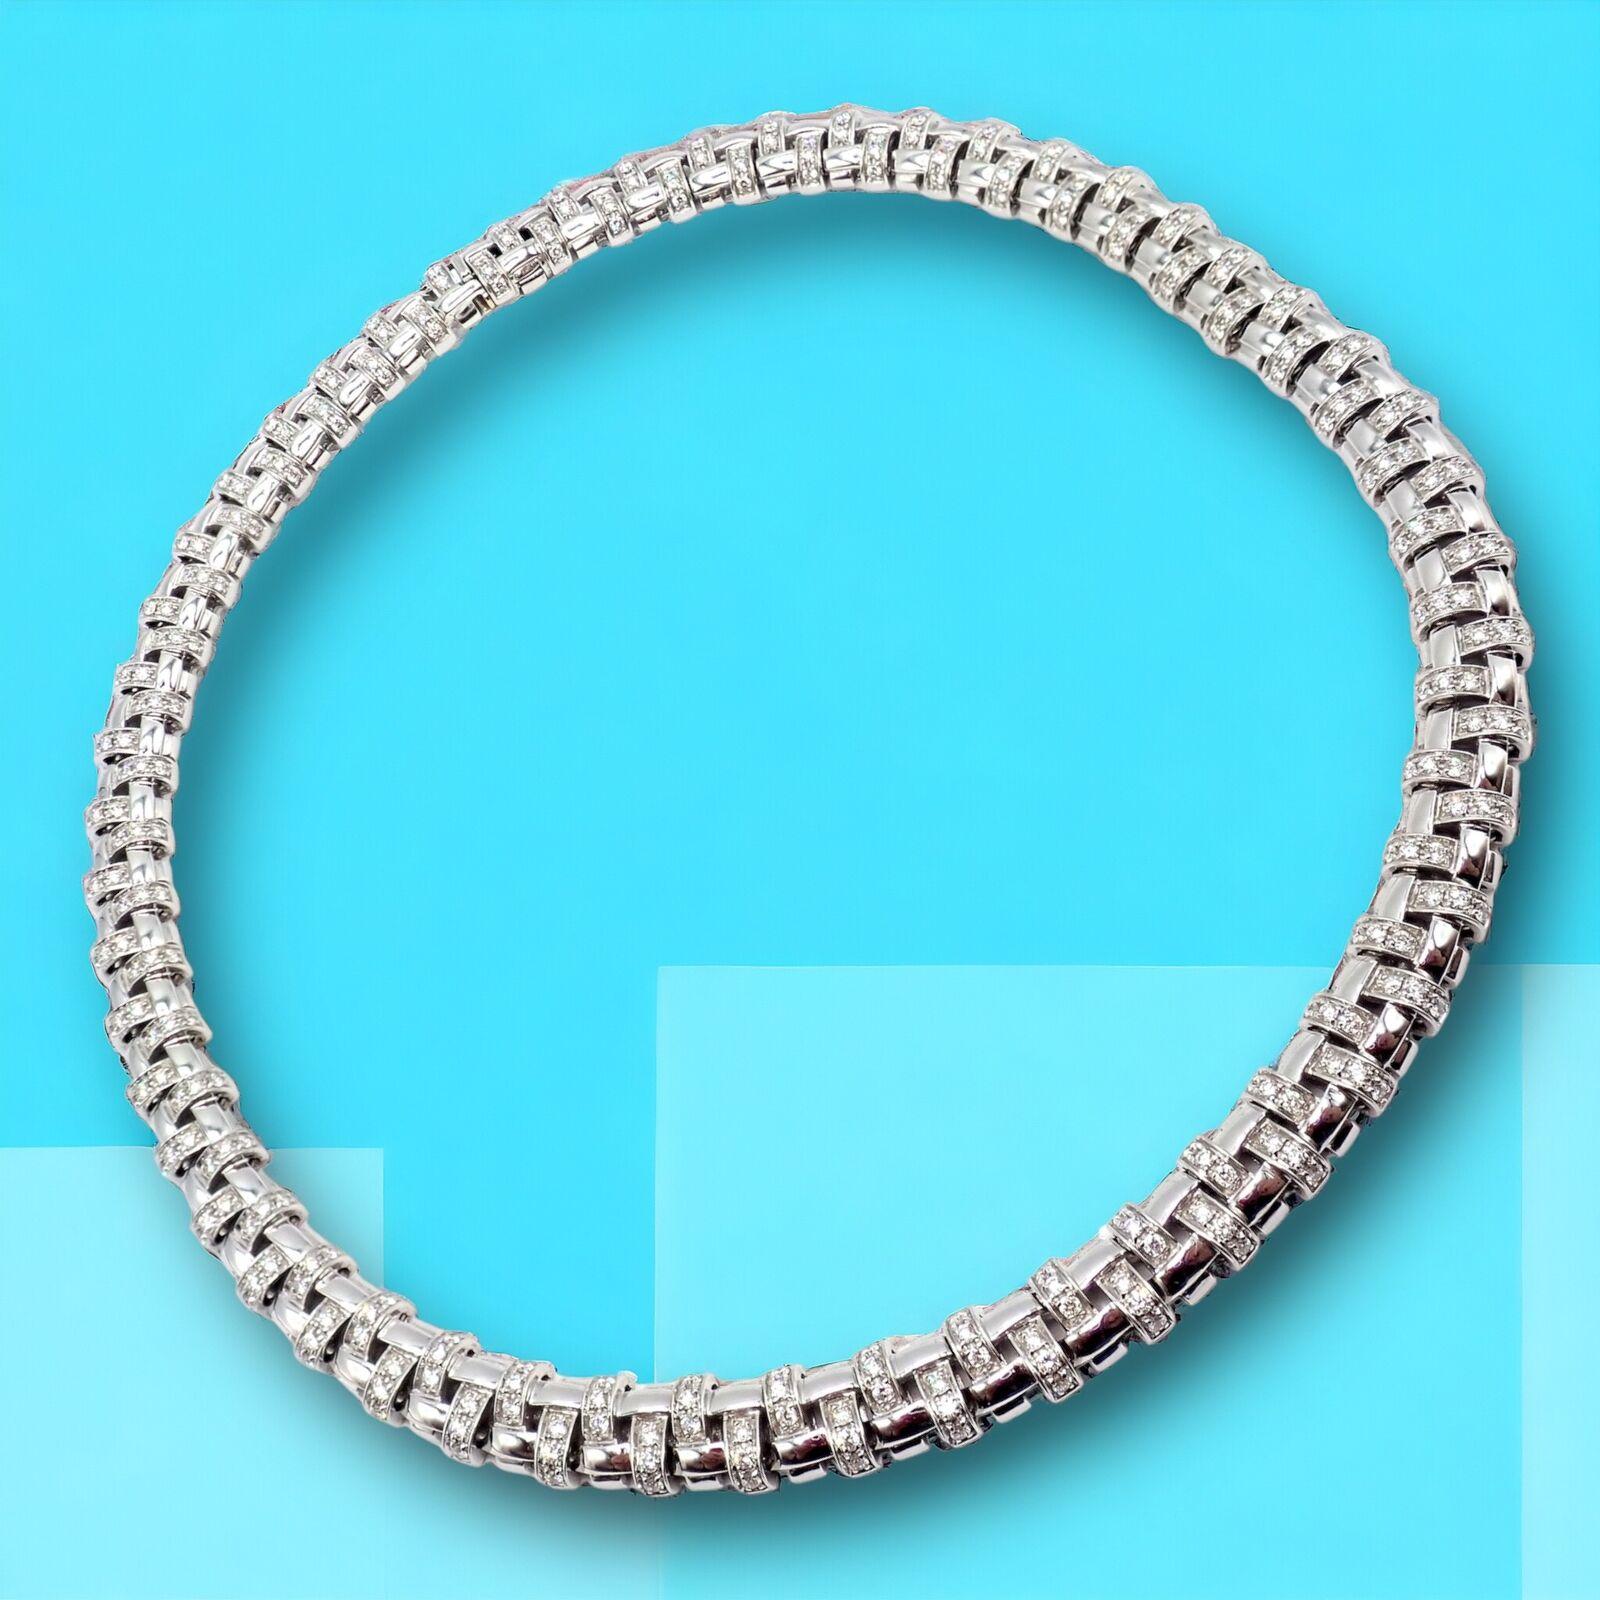 Collier ras du cou en or blanc 18k Vannerie Basket Weave Diamond par Tiffany & Co.
Cette authentique pièce de Tiffany & Co. Le collier Vannerie est un chef-d'œuvre de luxe et de design complexe. Fabriqué en or blanc 18 carats, il arbore un superbe